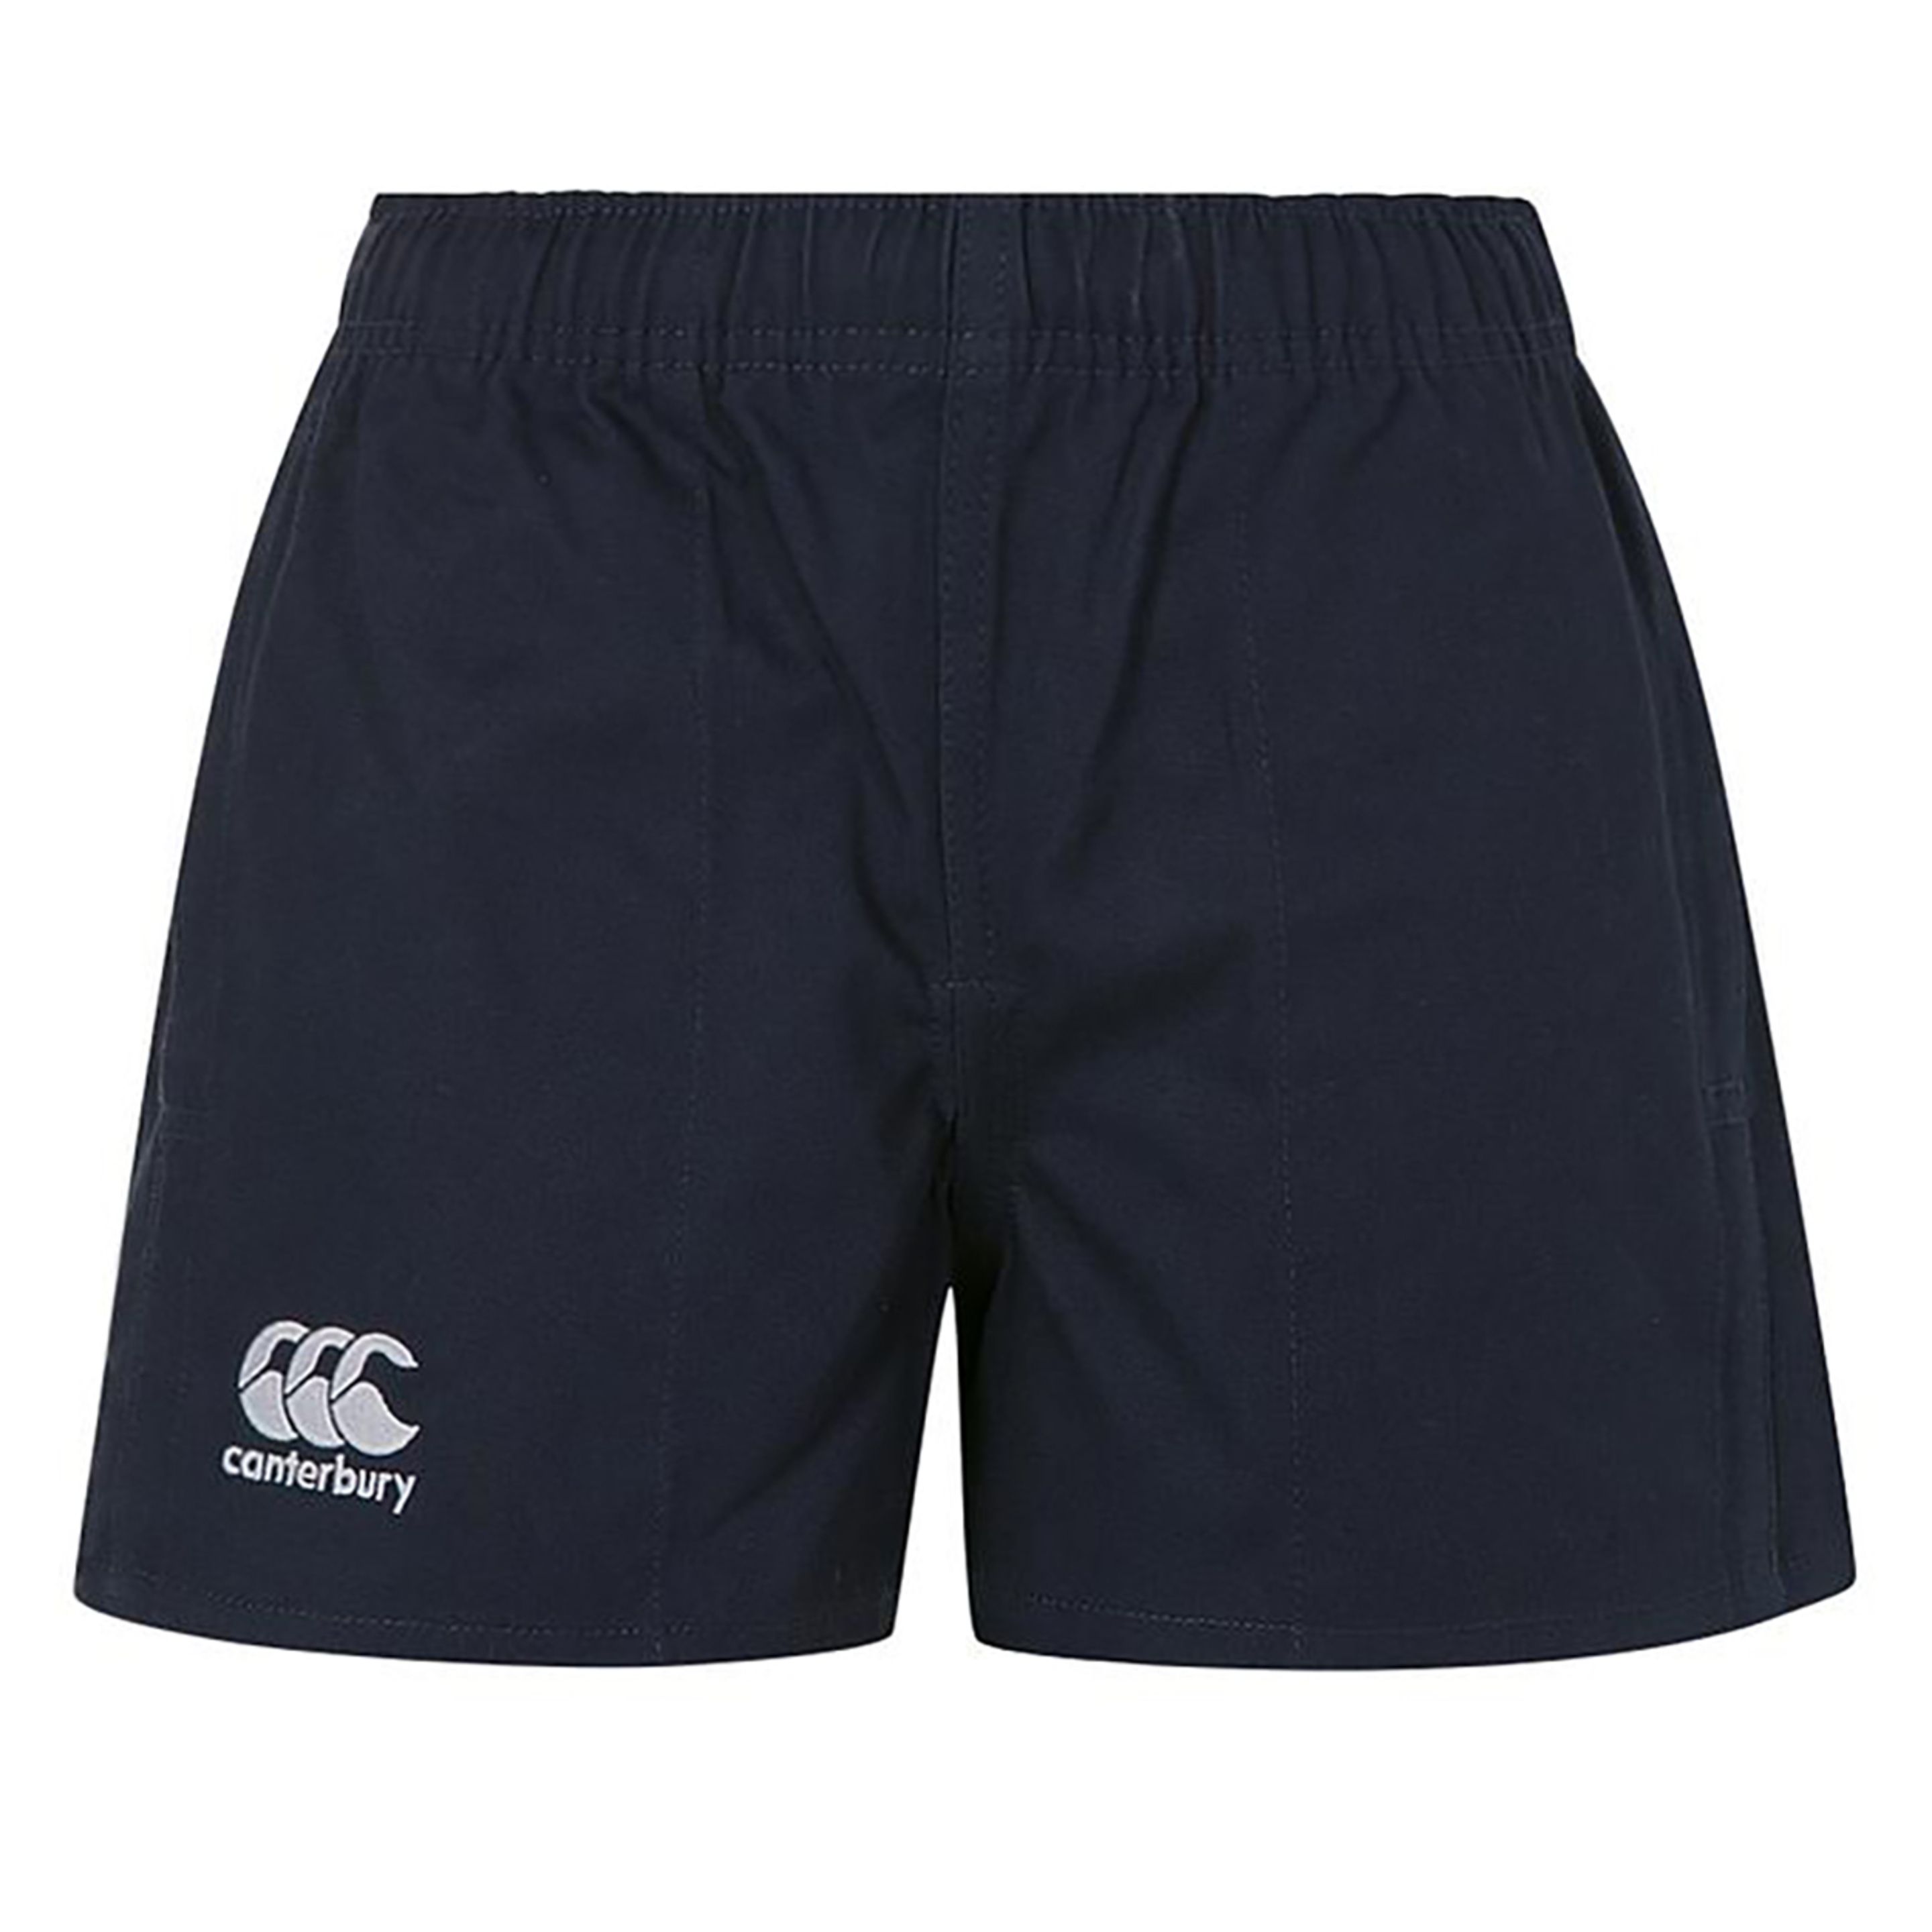 Shorts Estilo Rugby Canterbury